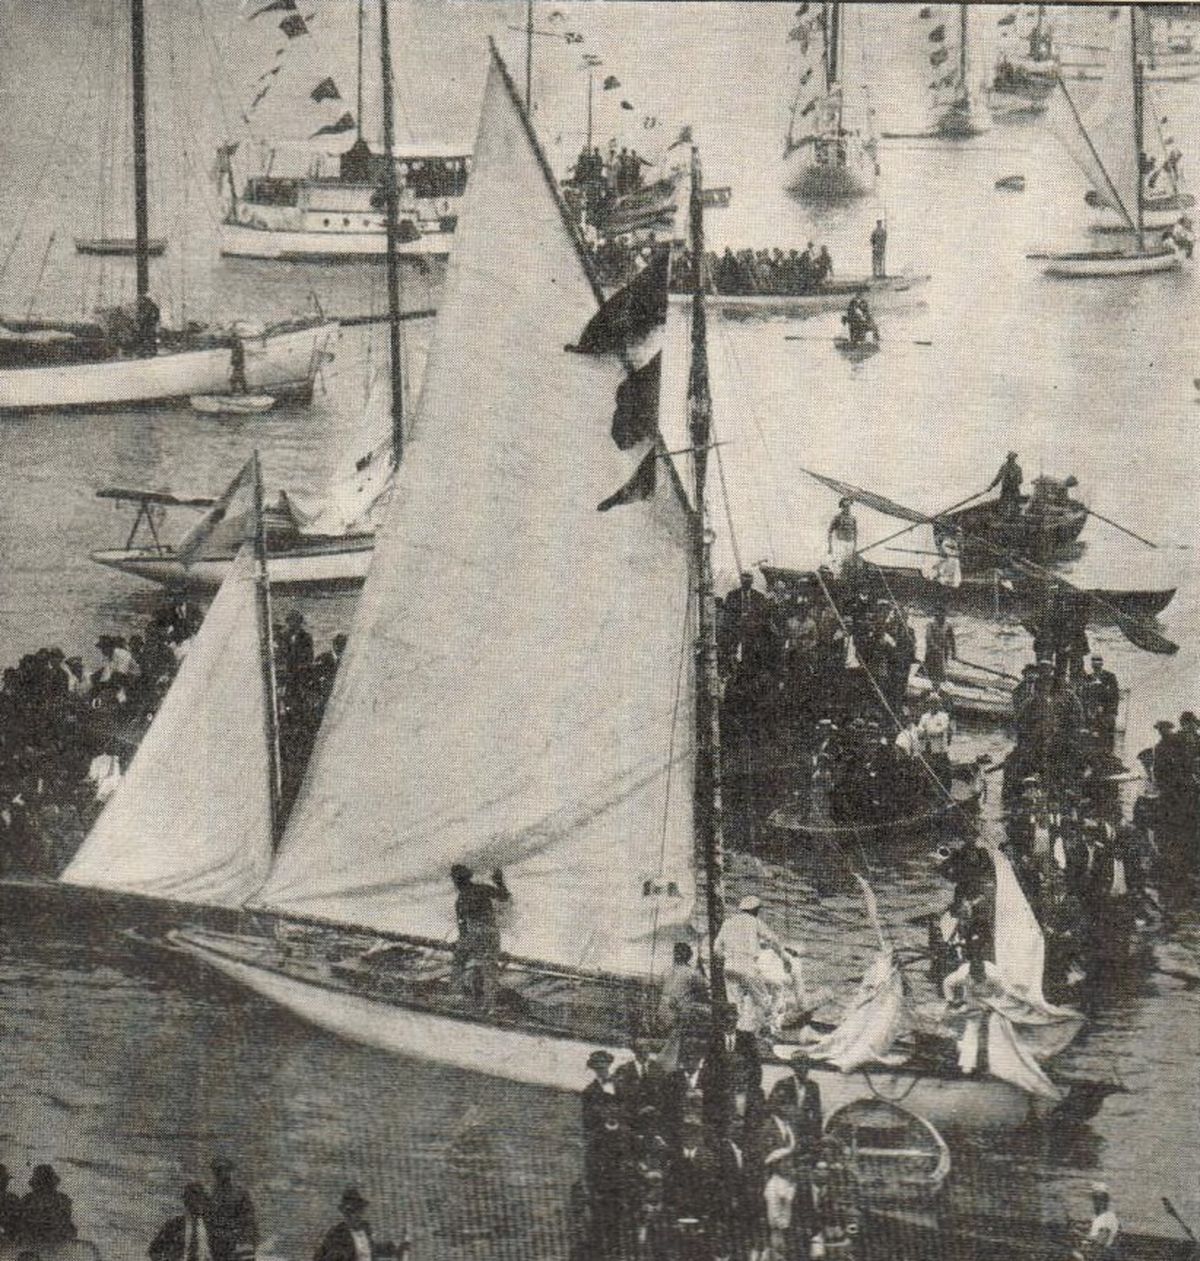 El 13 de abril de 1932, después de 121 días de navegación a bordo del Legh I y tras recorrer 7325 millas náuticas (13.565 kilómetros), una gran cantidad de público recibió a Vito Dumas en la dársena del Yacht Club Argentino por haber realizado el primer cruce del Atlántico.